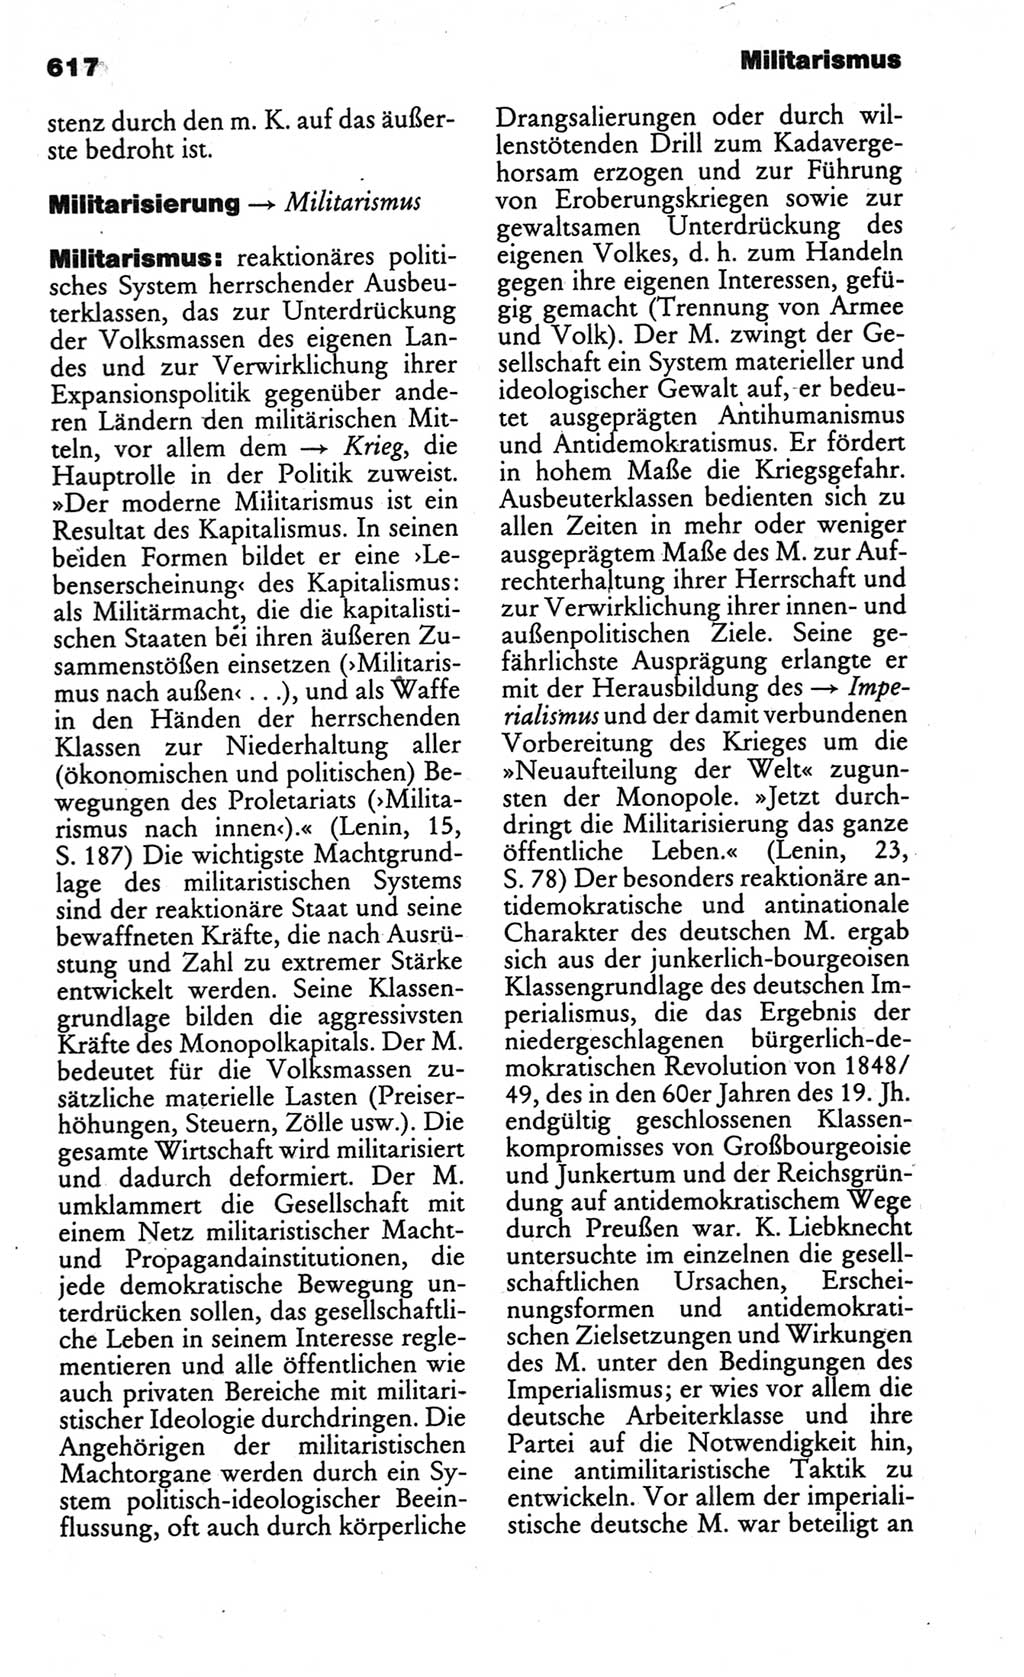 Kleines politisches Wörterbuch [Deutsche Demokratische Republik (DDR)] 1986, Seite 617 (Kl. pol. Wb. DDR 1986, S. 617)